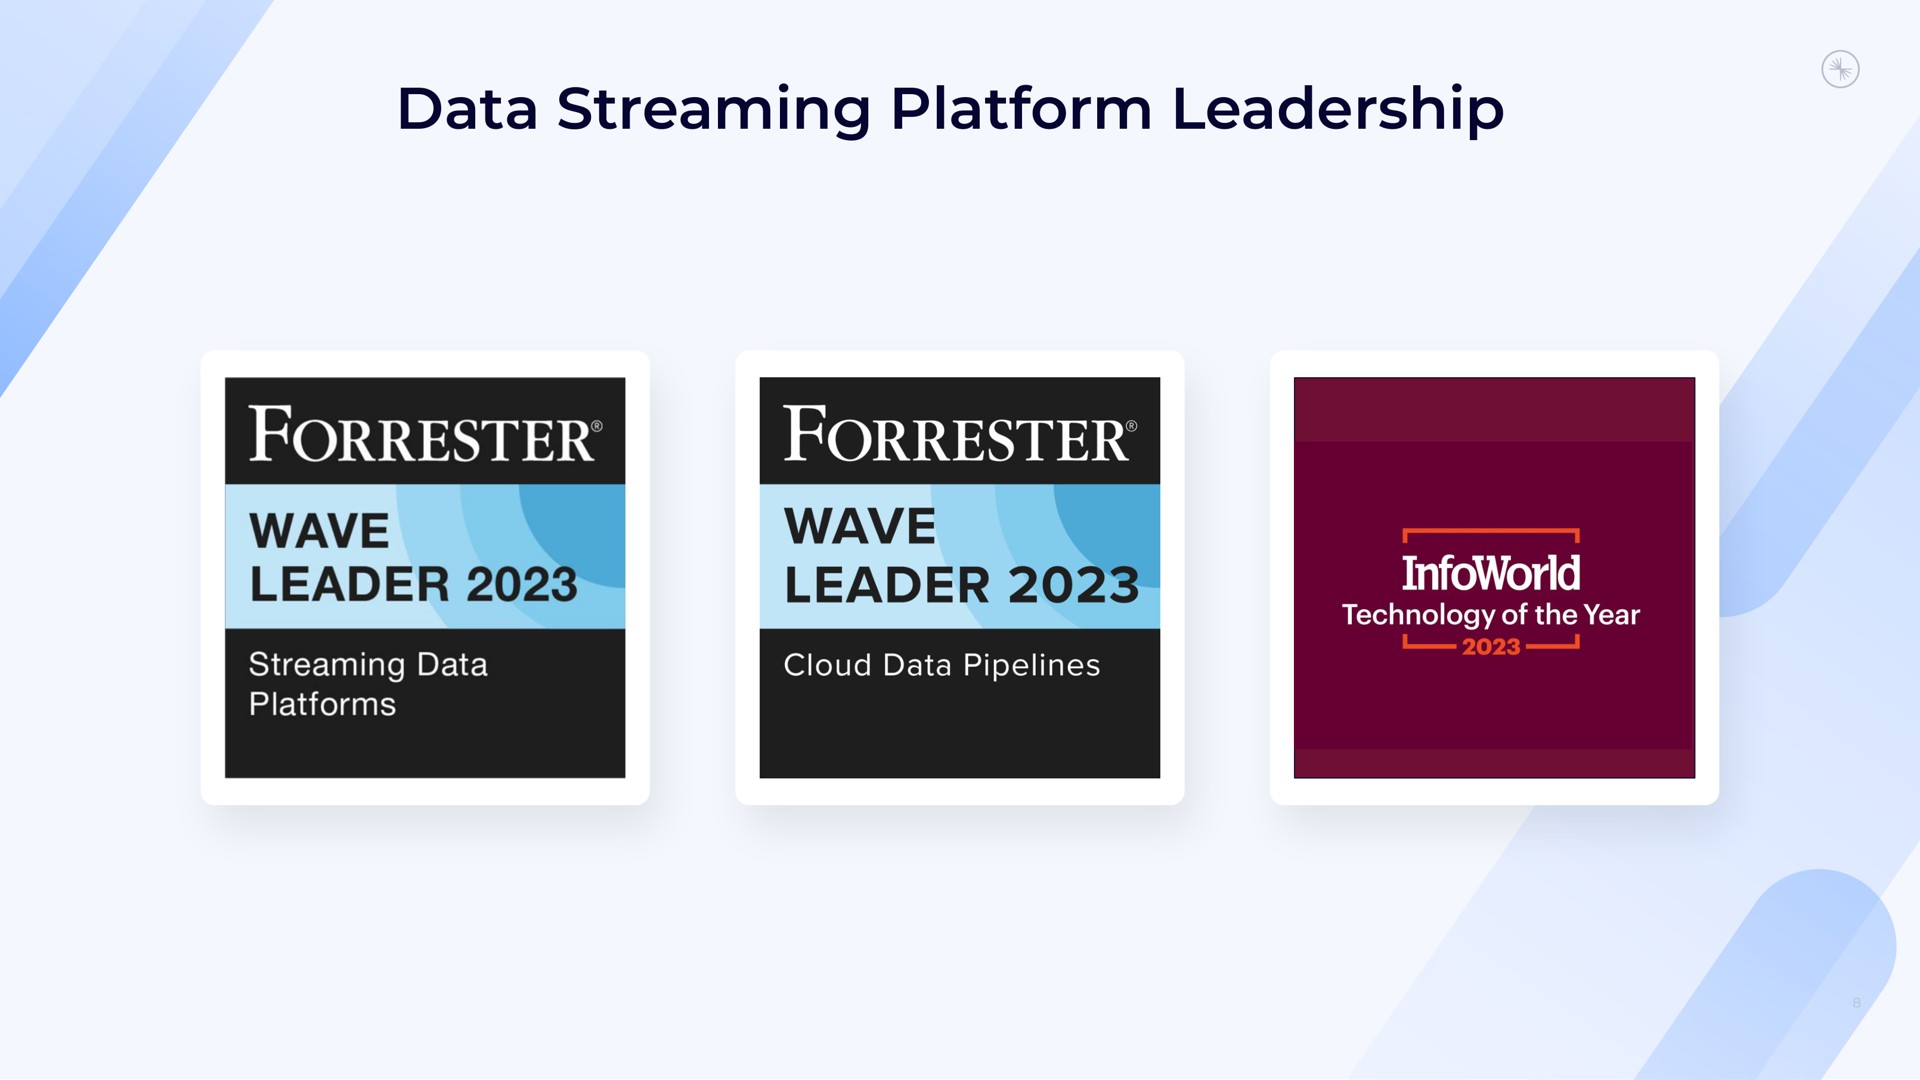 data streaming platform leadership wave leader wave leader | Confluent